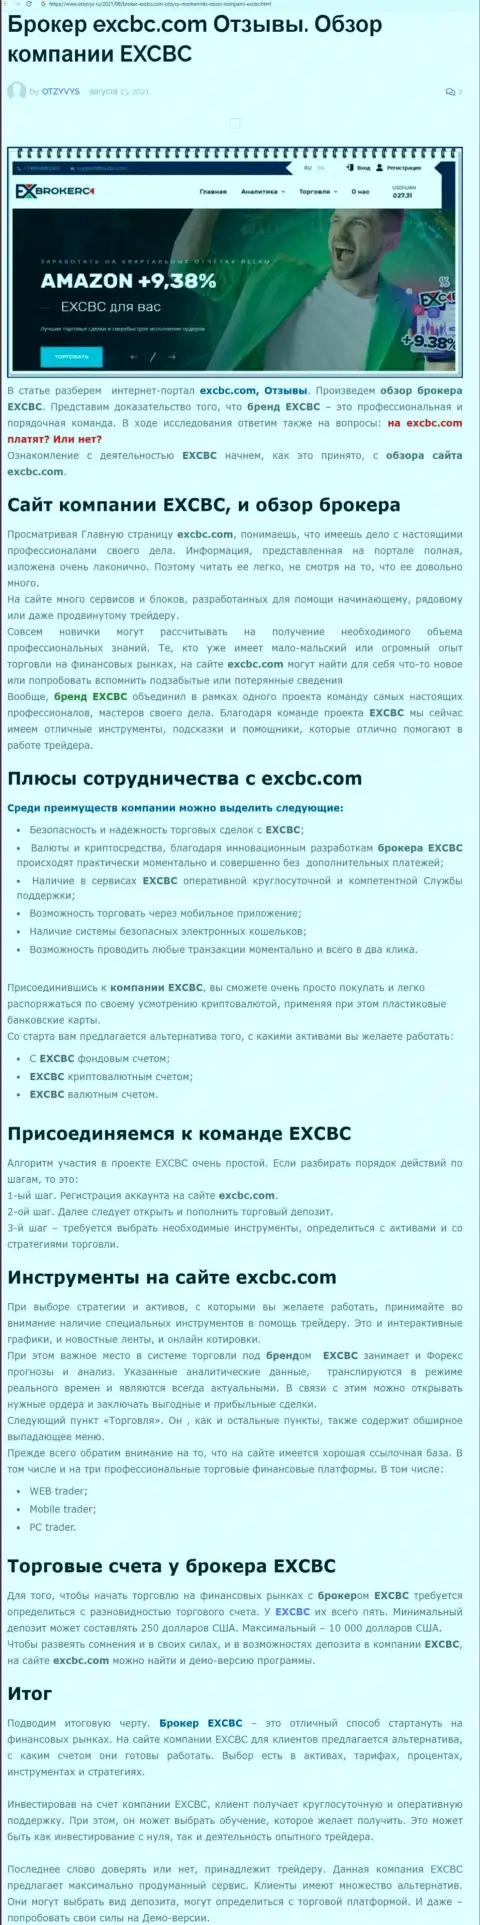 ЕХКБК Ком - это ответственная и порядочная FOREX брокерская организация, об этом можно узнать из информационной статьи на портале otzyvys ru